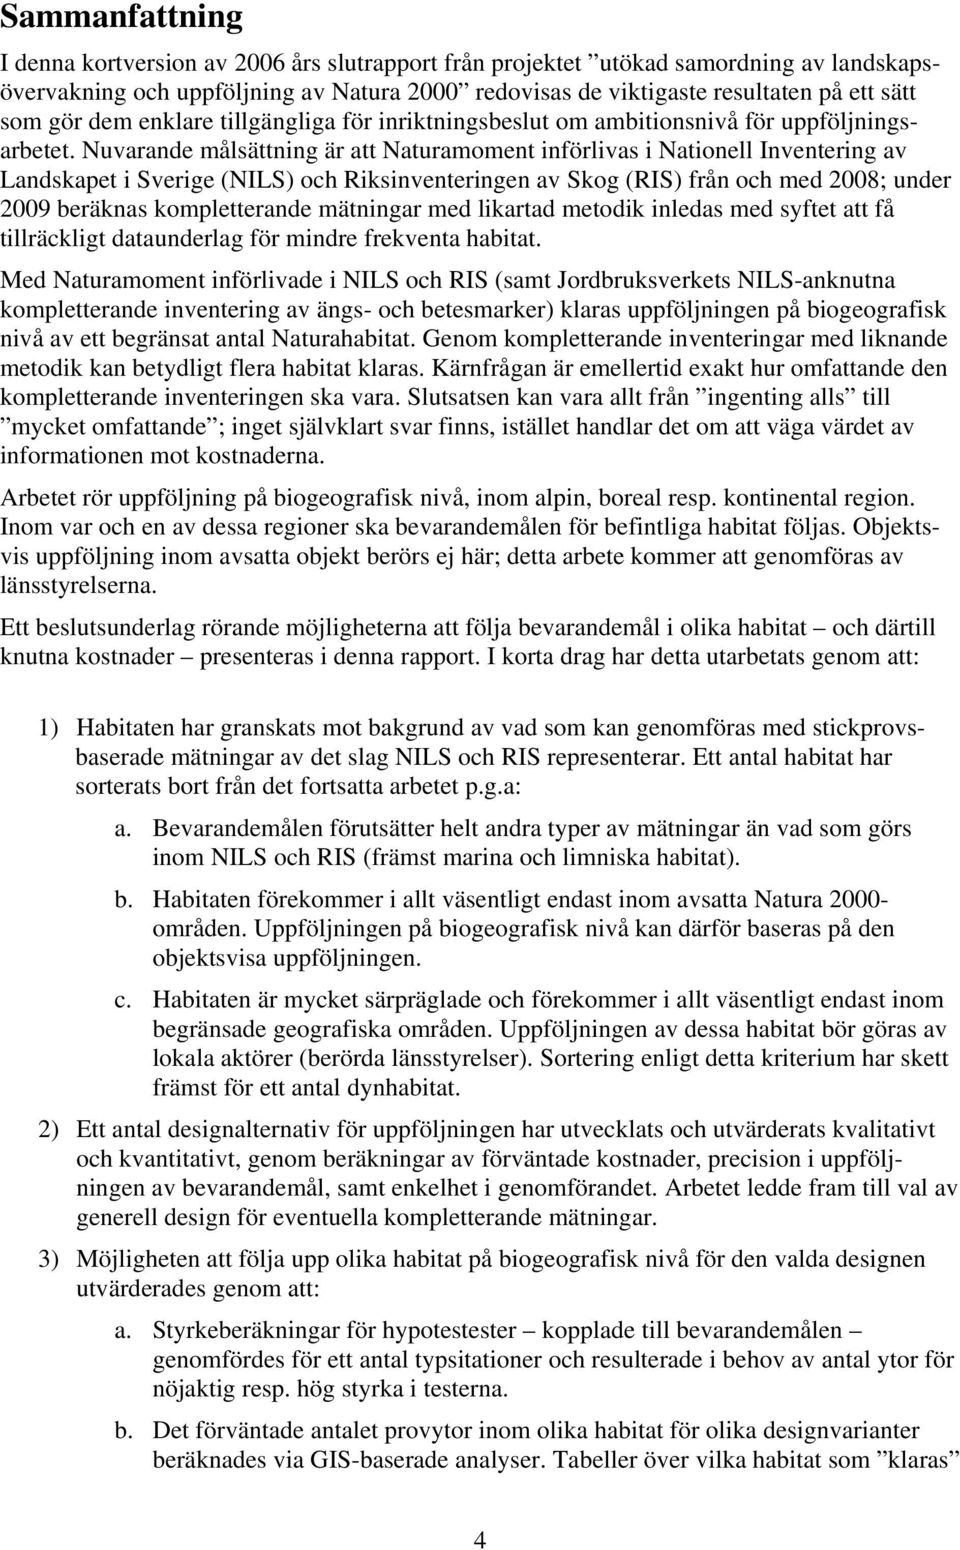 Nuvarande målsättning är att Naturamoment införlivas i Nationell Inventering av Landskapet i Sverige (NILS) och Riksinventeringen av Skog (RIS) från och med 2008; under 2009 beräknas kompletterande